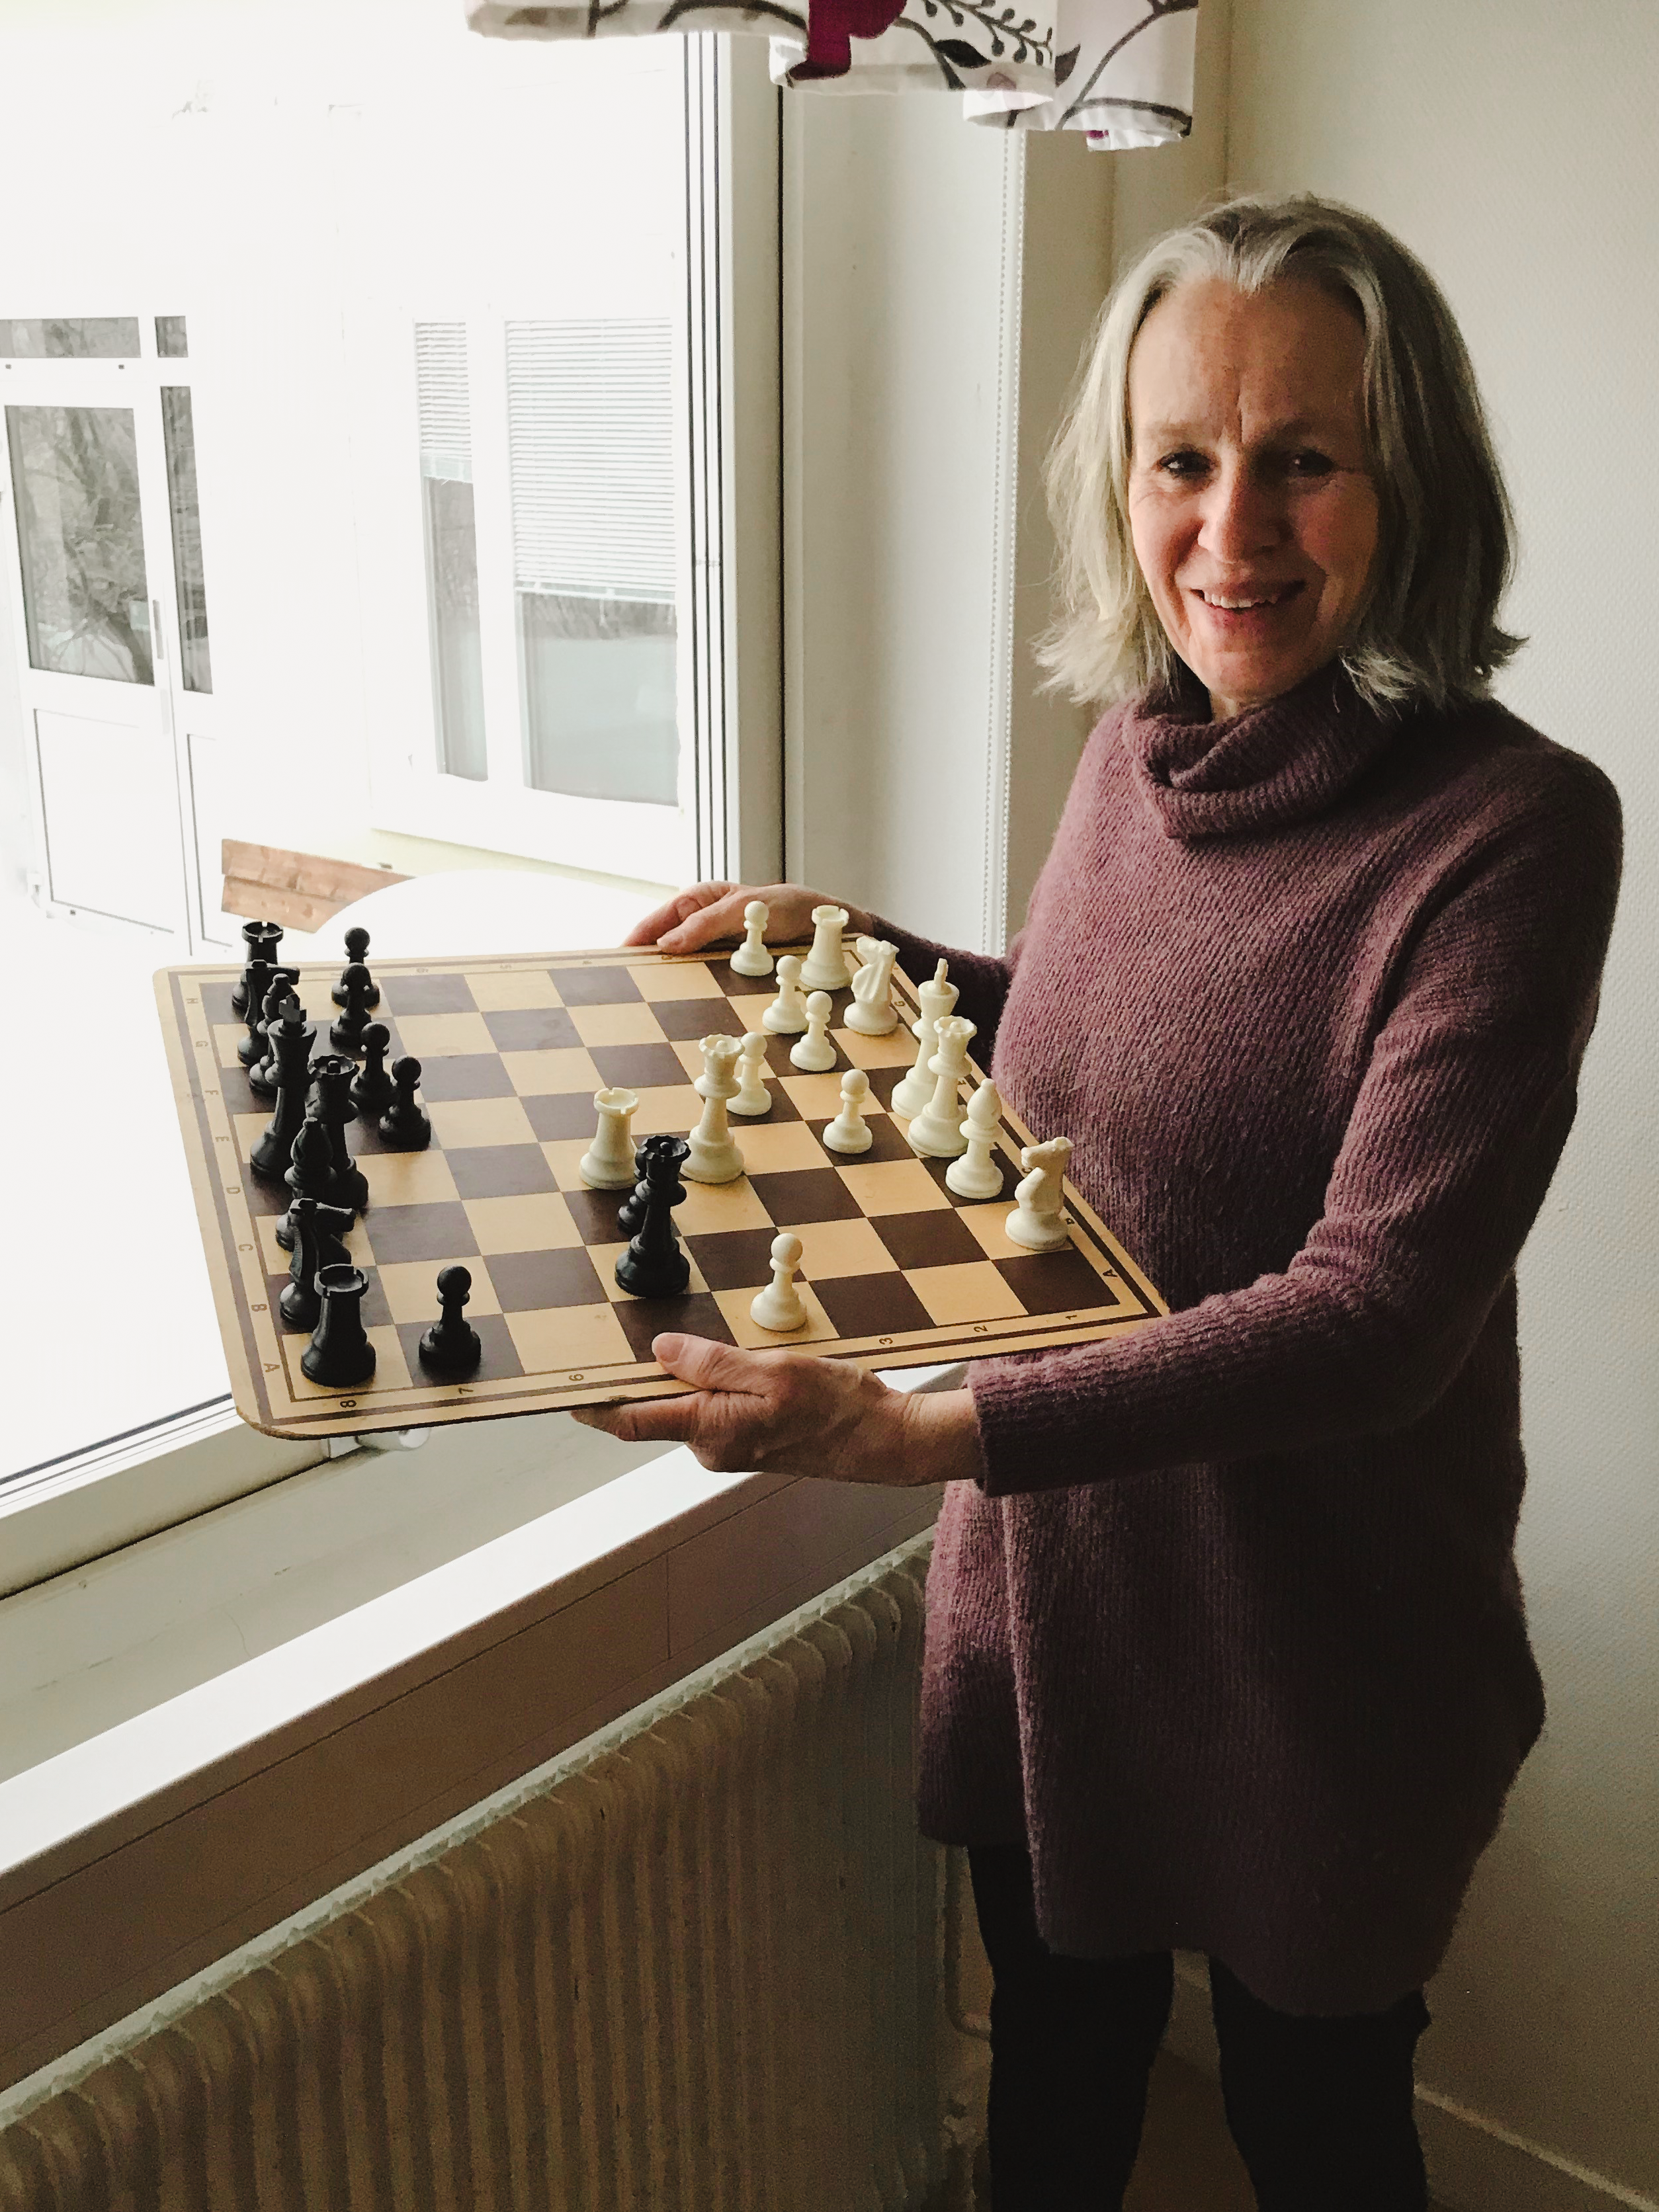 Ruth Ranberg håller i ett schackbräde med pjäser på och tittar in i kameran med ett leende.